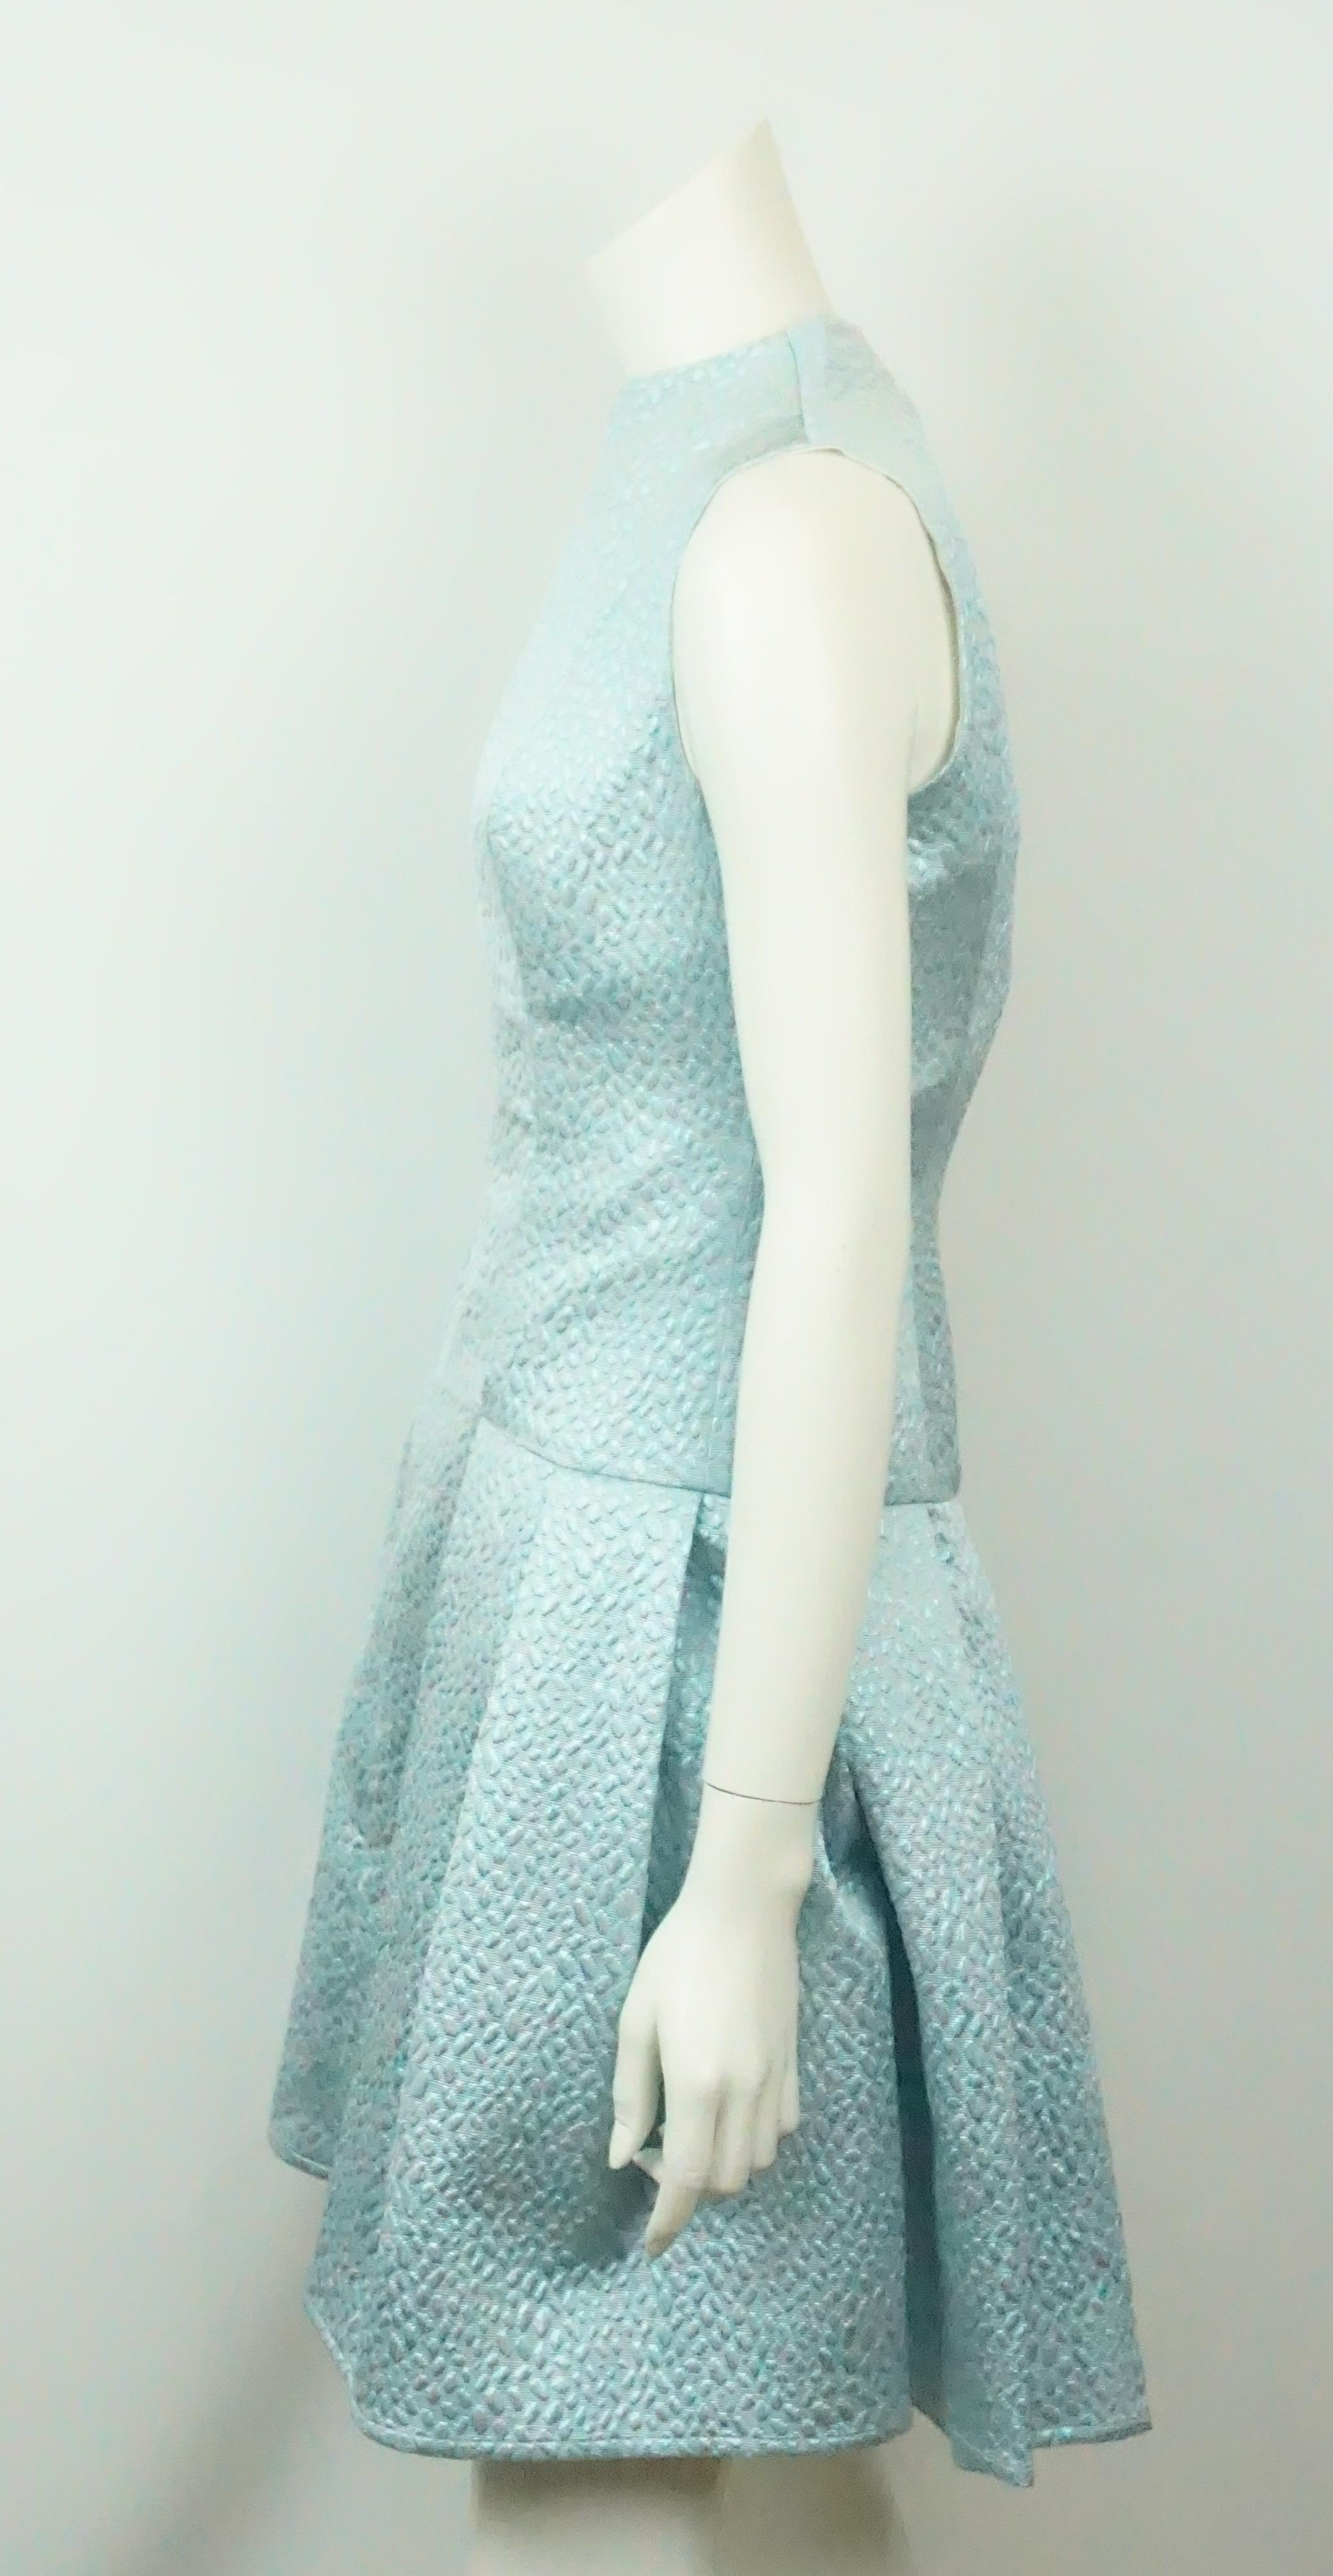 Joanna Mastroianni Mintfarbenes Brokatkleid N/S-2. Dieses fabelhafte ärmellose Kleid ist in ausgezeichnetem Zustand. Es hat eine hellblaue, minzige Farbe. Es gibt keine Anzeichen von Verschleiß. Das Kleid hat ein detailliertes Muster in